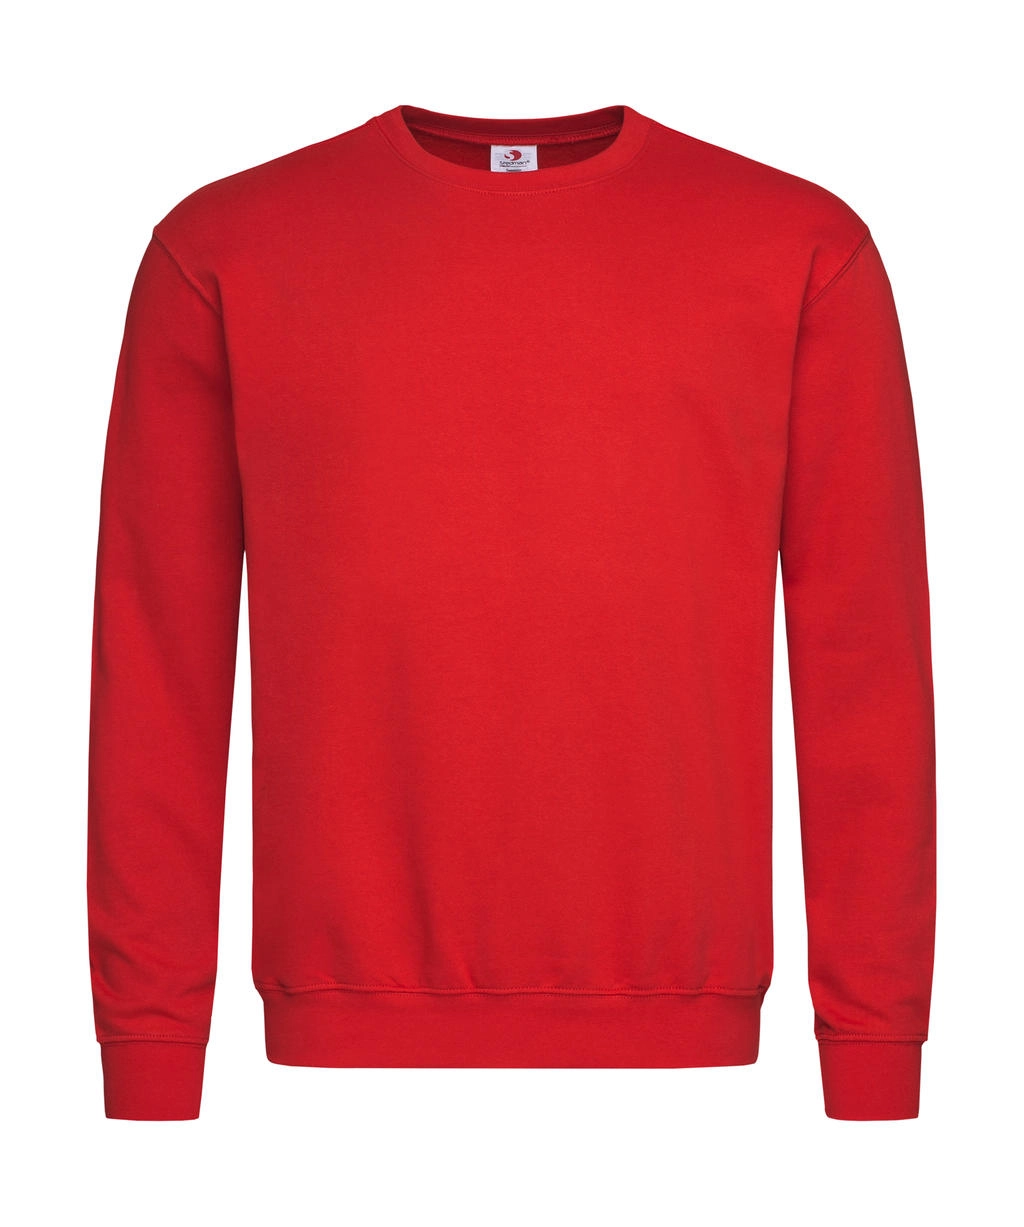 Unisex Sweatshirt Classic zum Besticken und Bedrucken in der Farbe Scarlet Red mit Ihren Logo, Schriftzug oder Motiv.